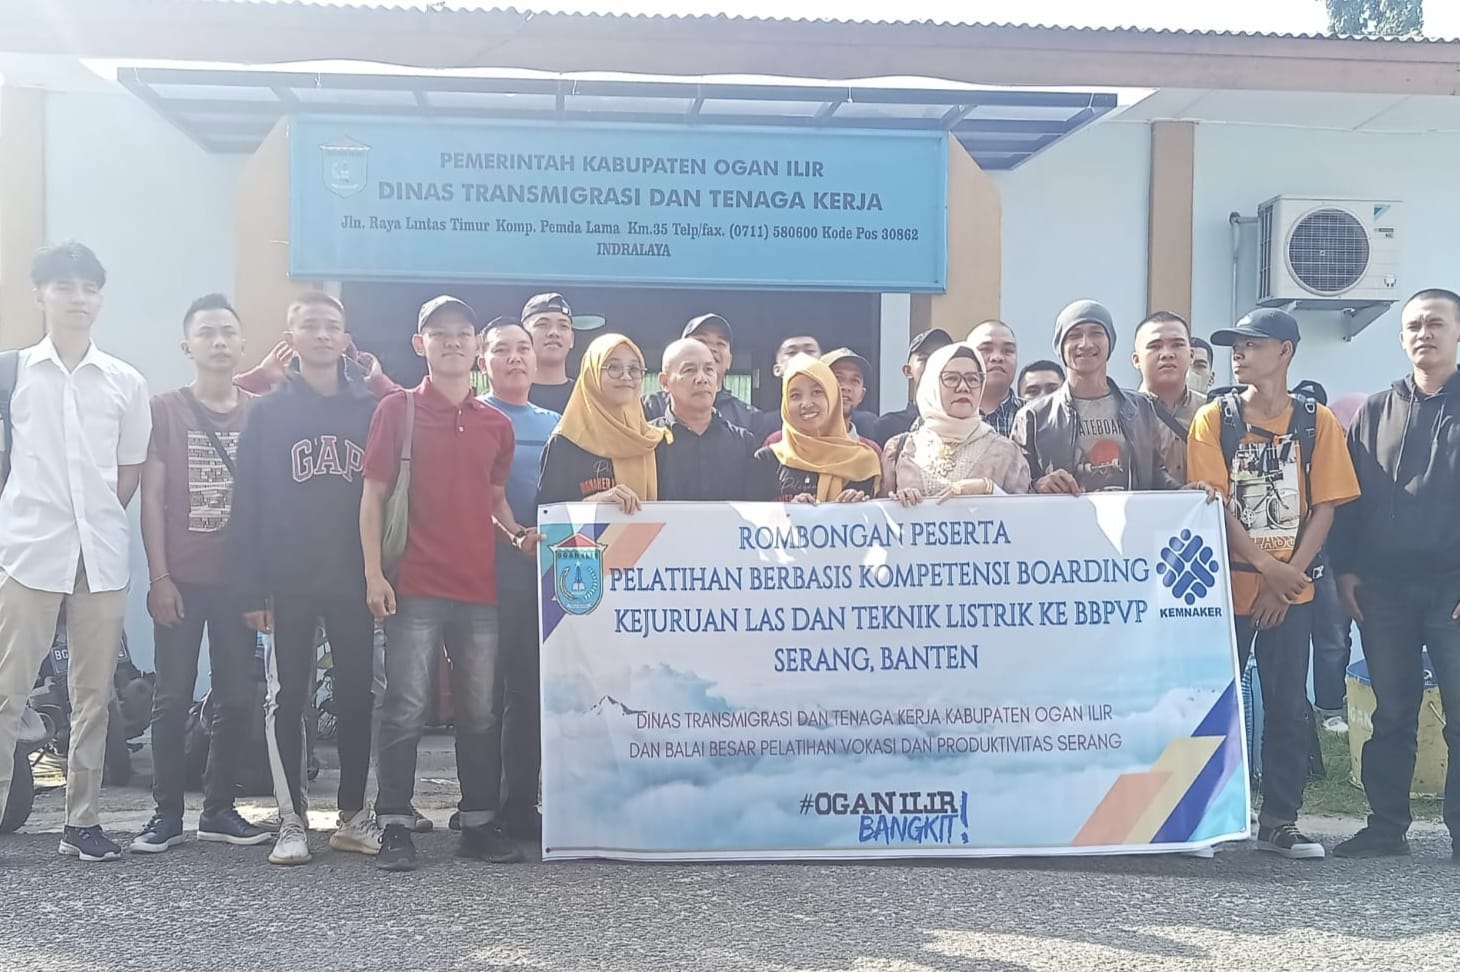 16 Peserta Pelatihan Berbasis Kompetensi Boarding Asal Ogan Ilir Diberangkatkan Menuju Banten